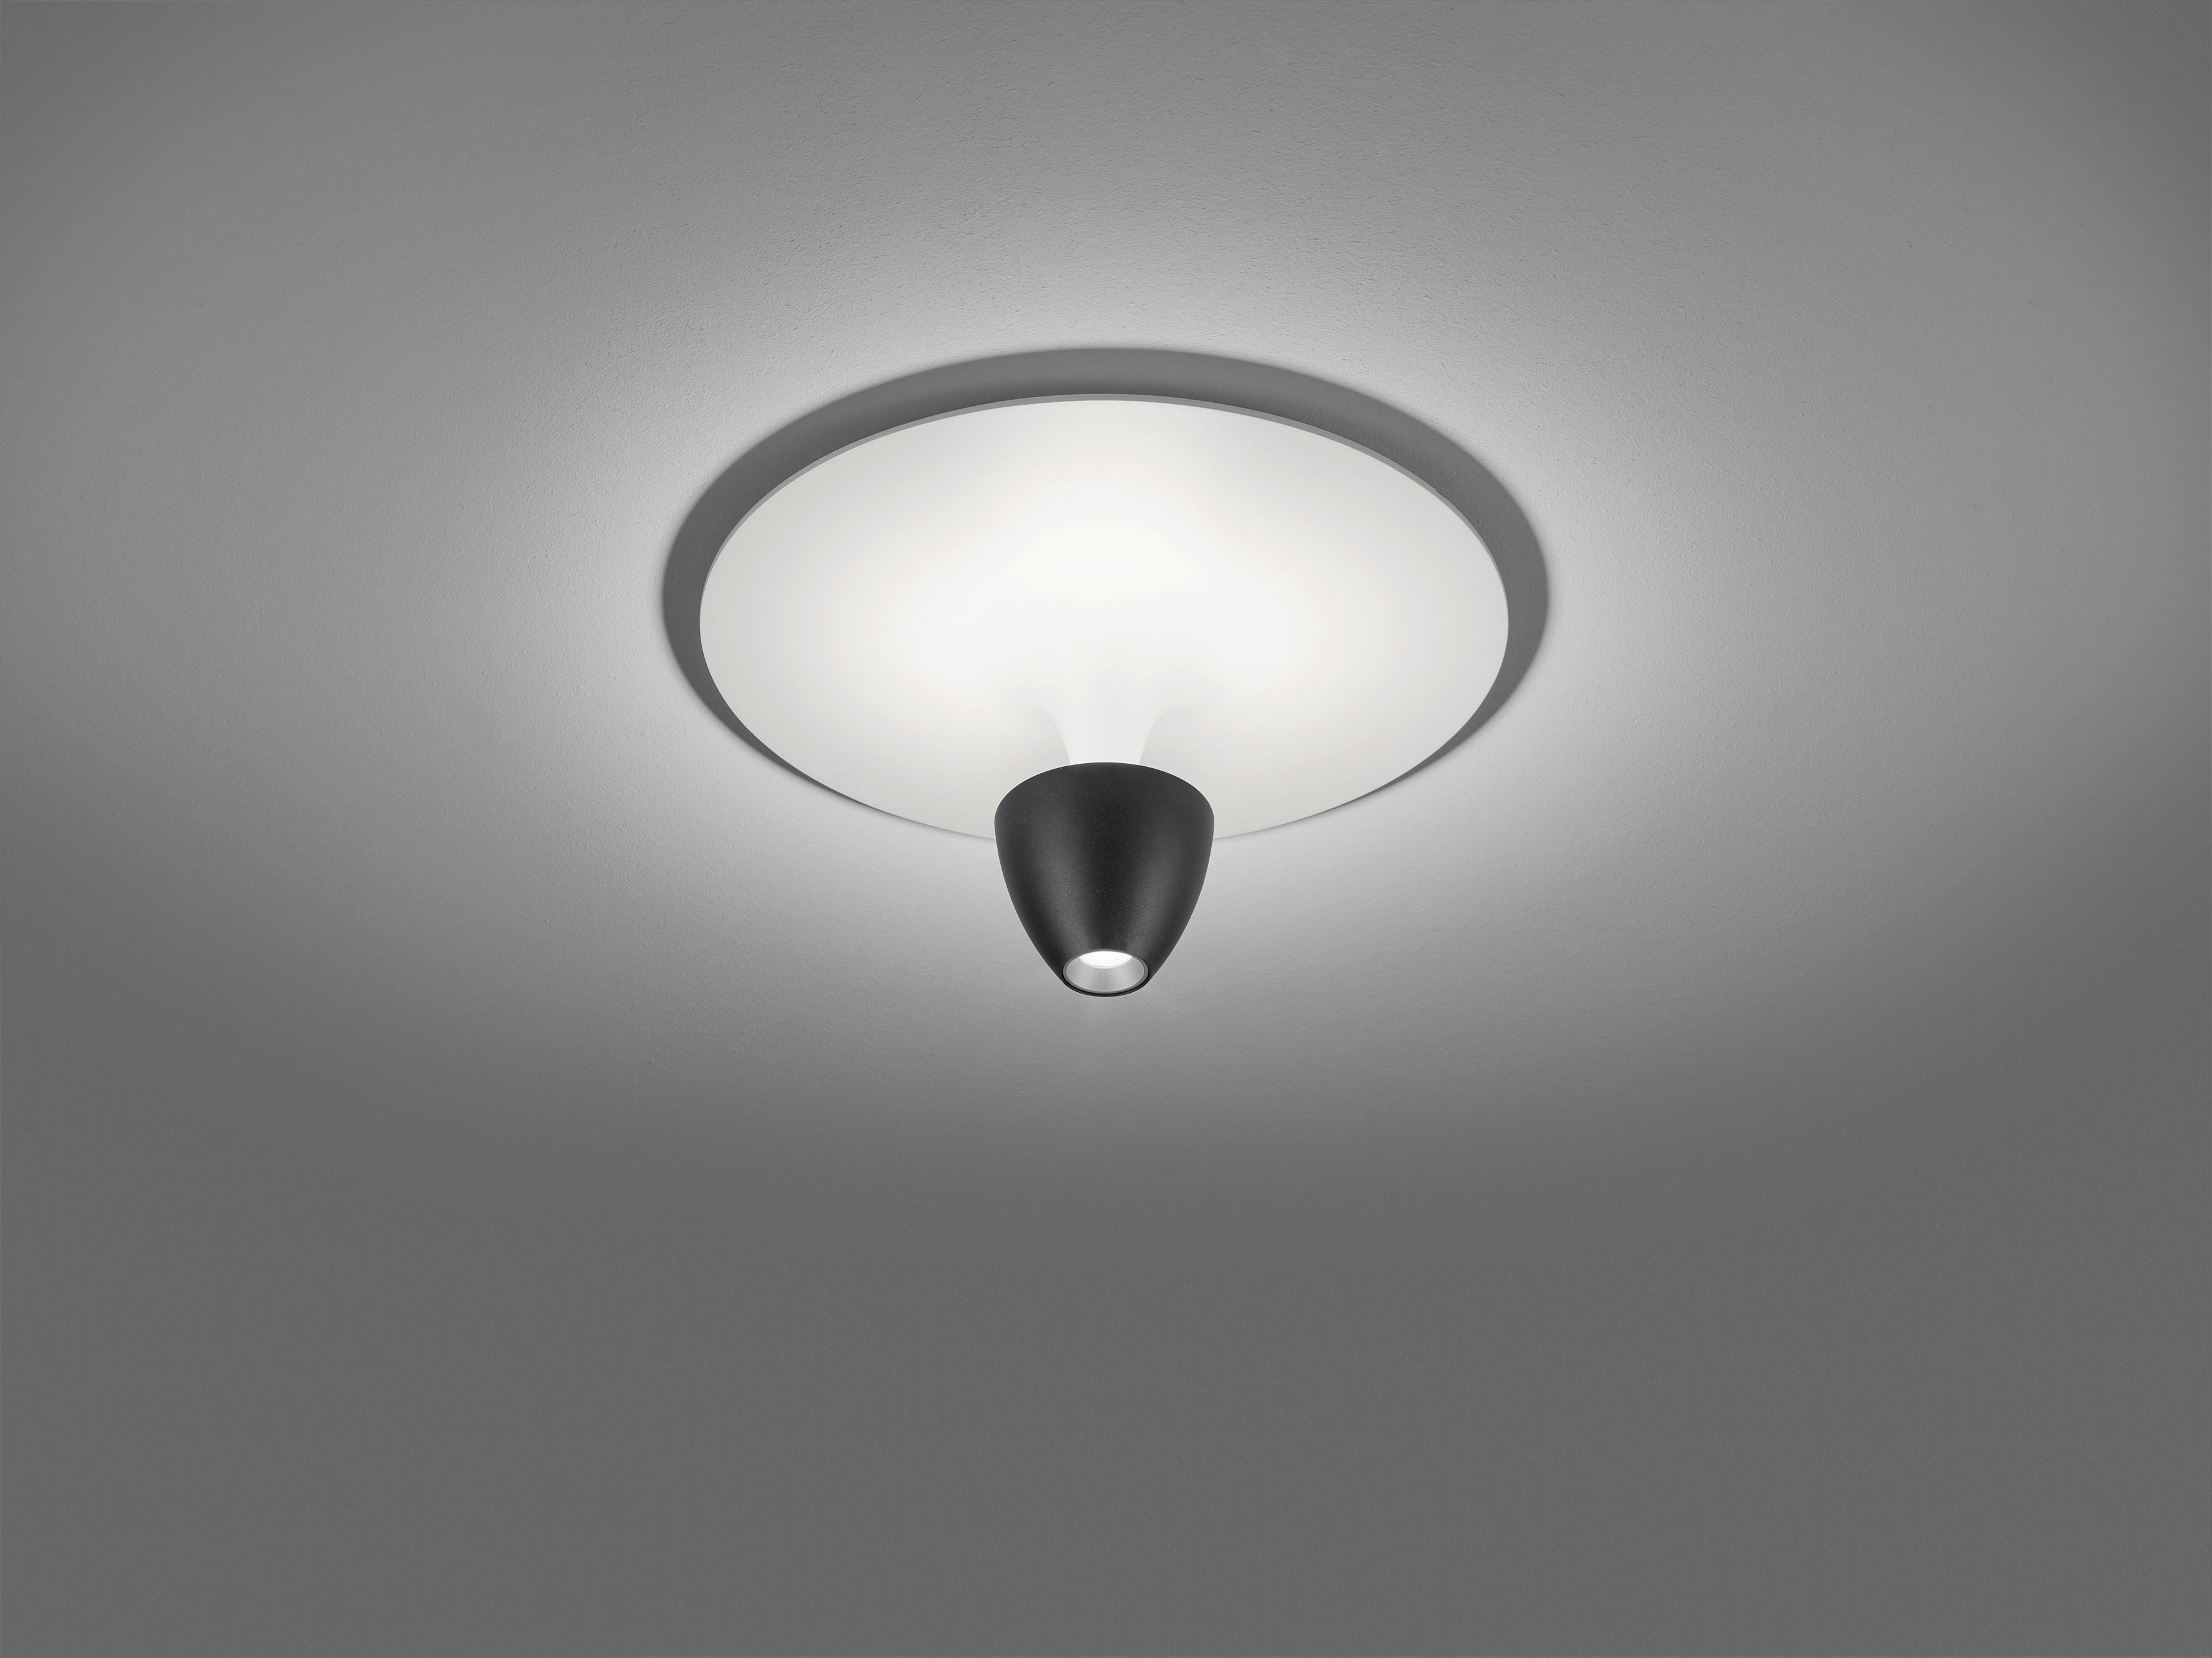 LED-DECKENLEUCHTE  30/17 cm    - Schwarz/Weiß, Design, Kunststoff/Metall (30/17cm) - Helestra